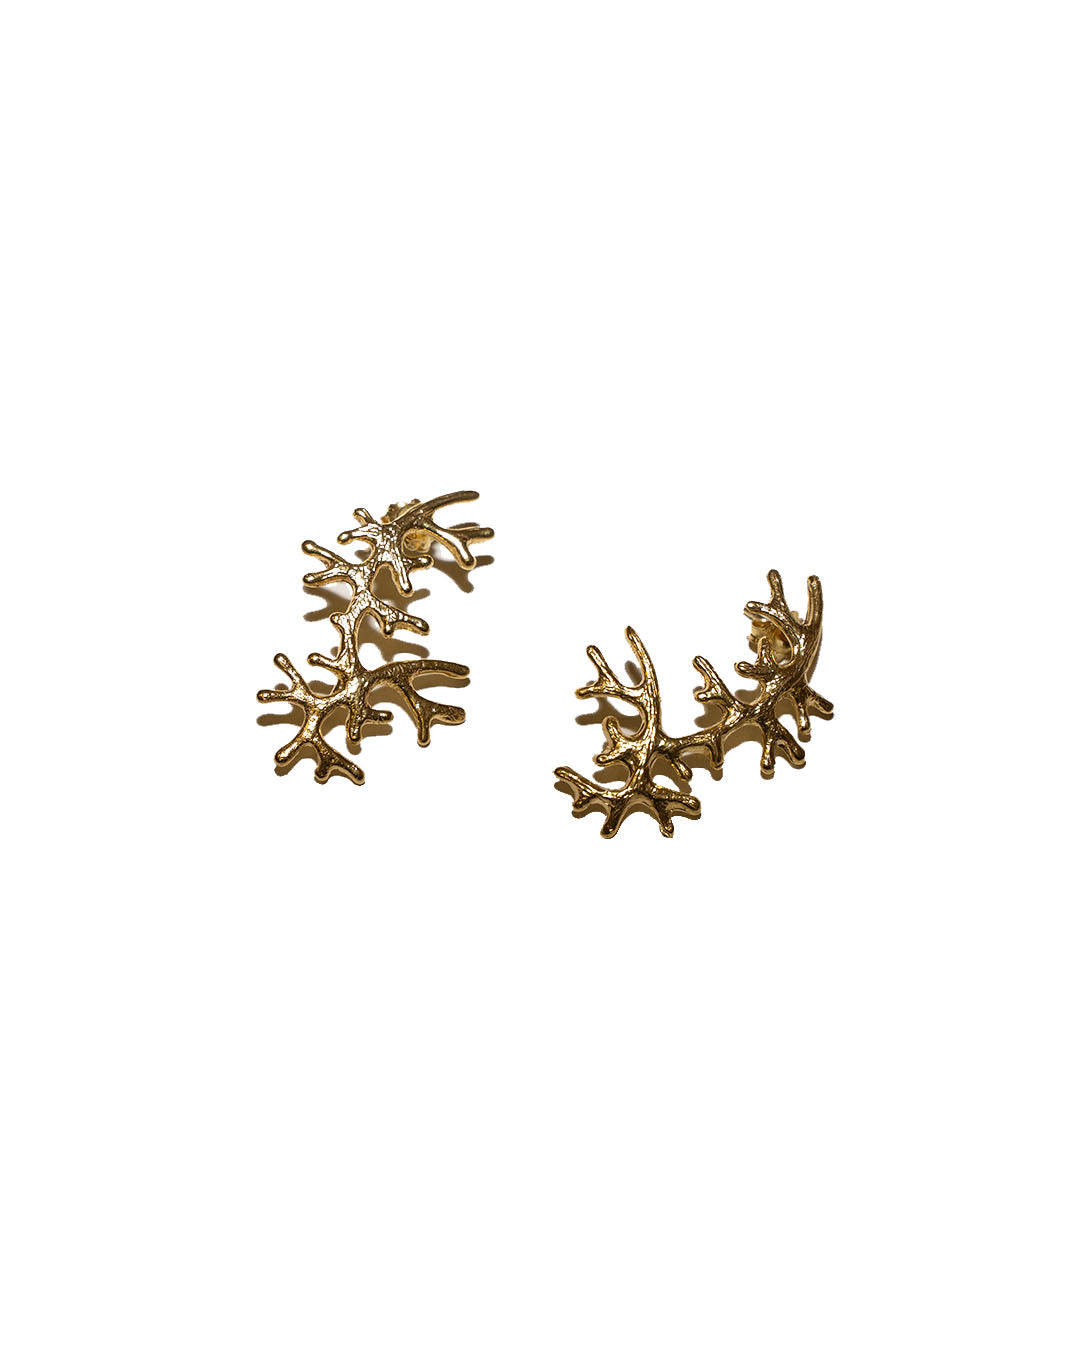 Sea Coral earrings